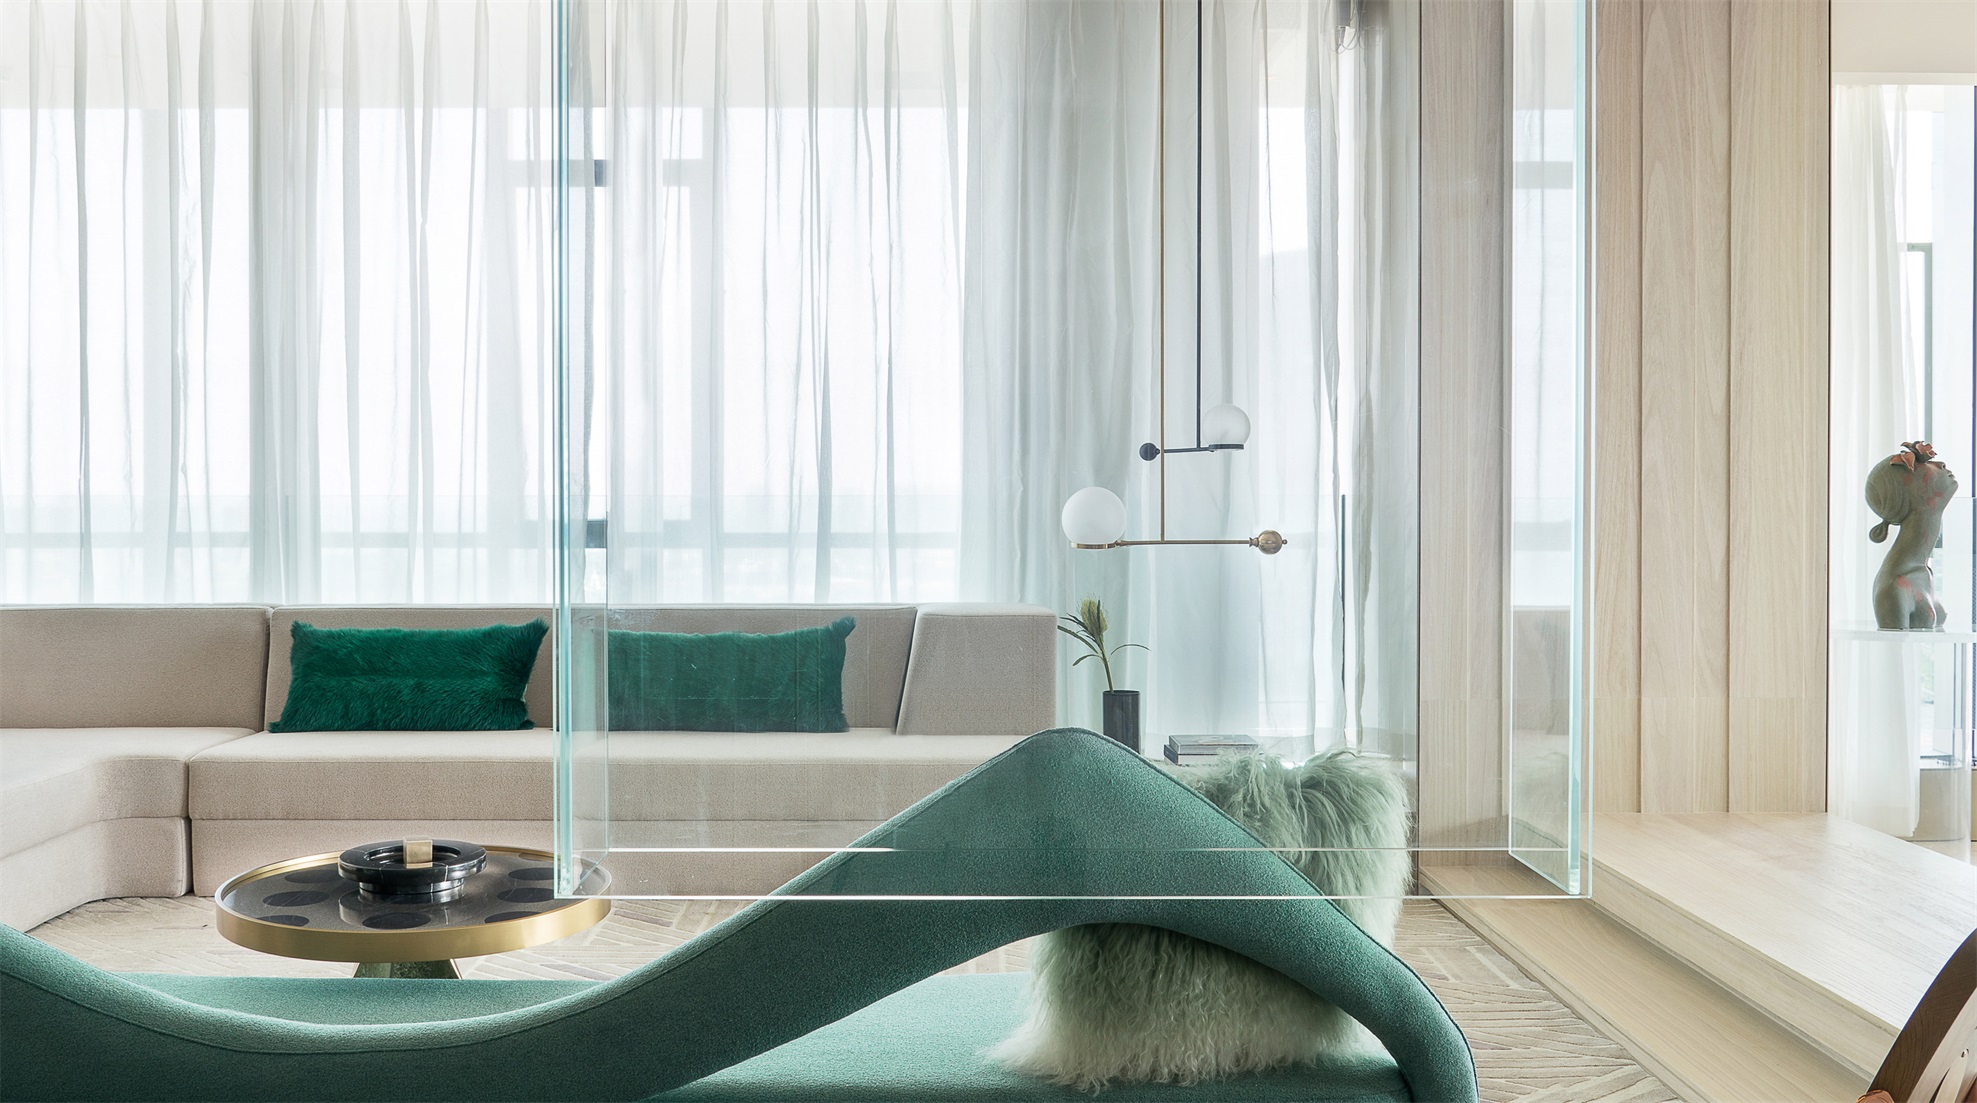 客厅以白色为主色调，灰白色布艺沙发是空间主角，局部用绿色进行点缀，简约大气。